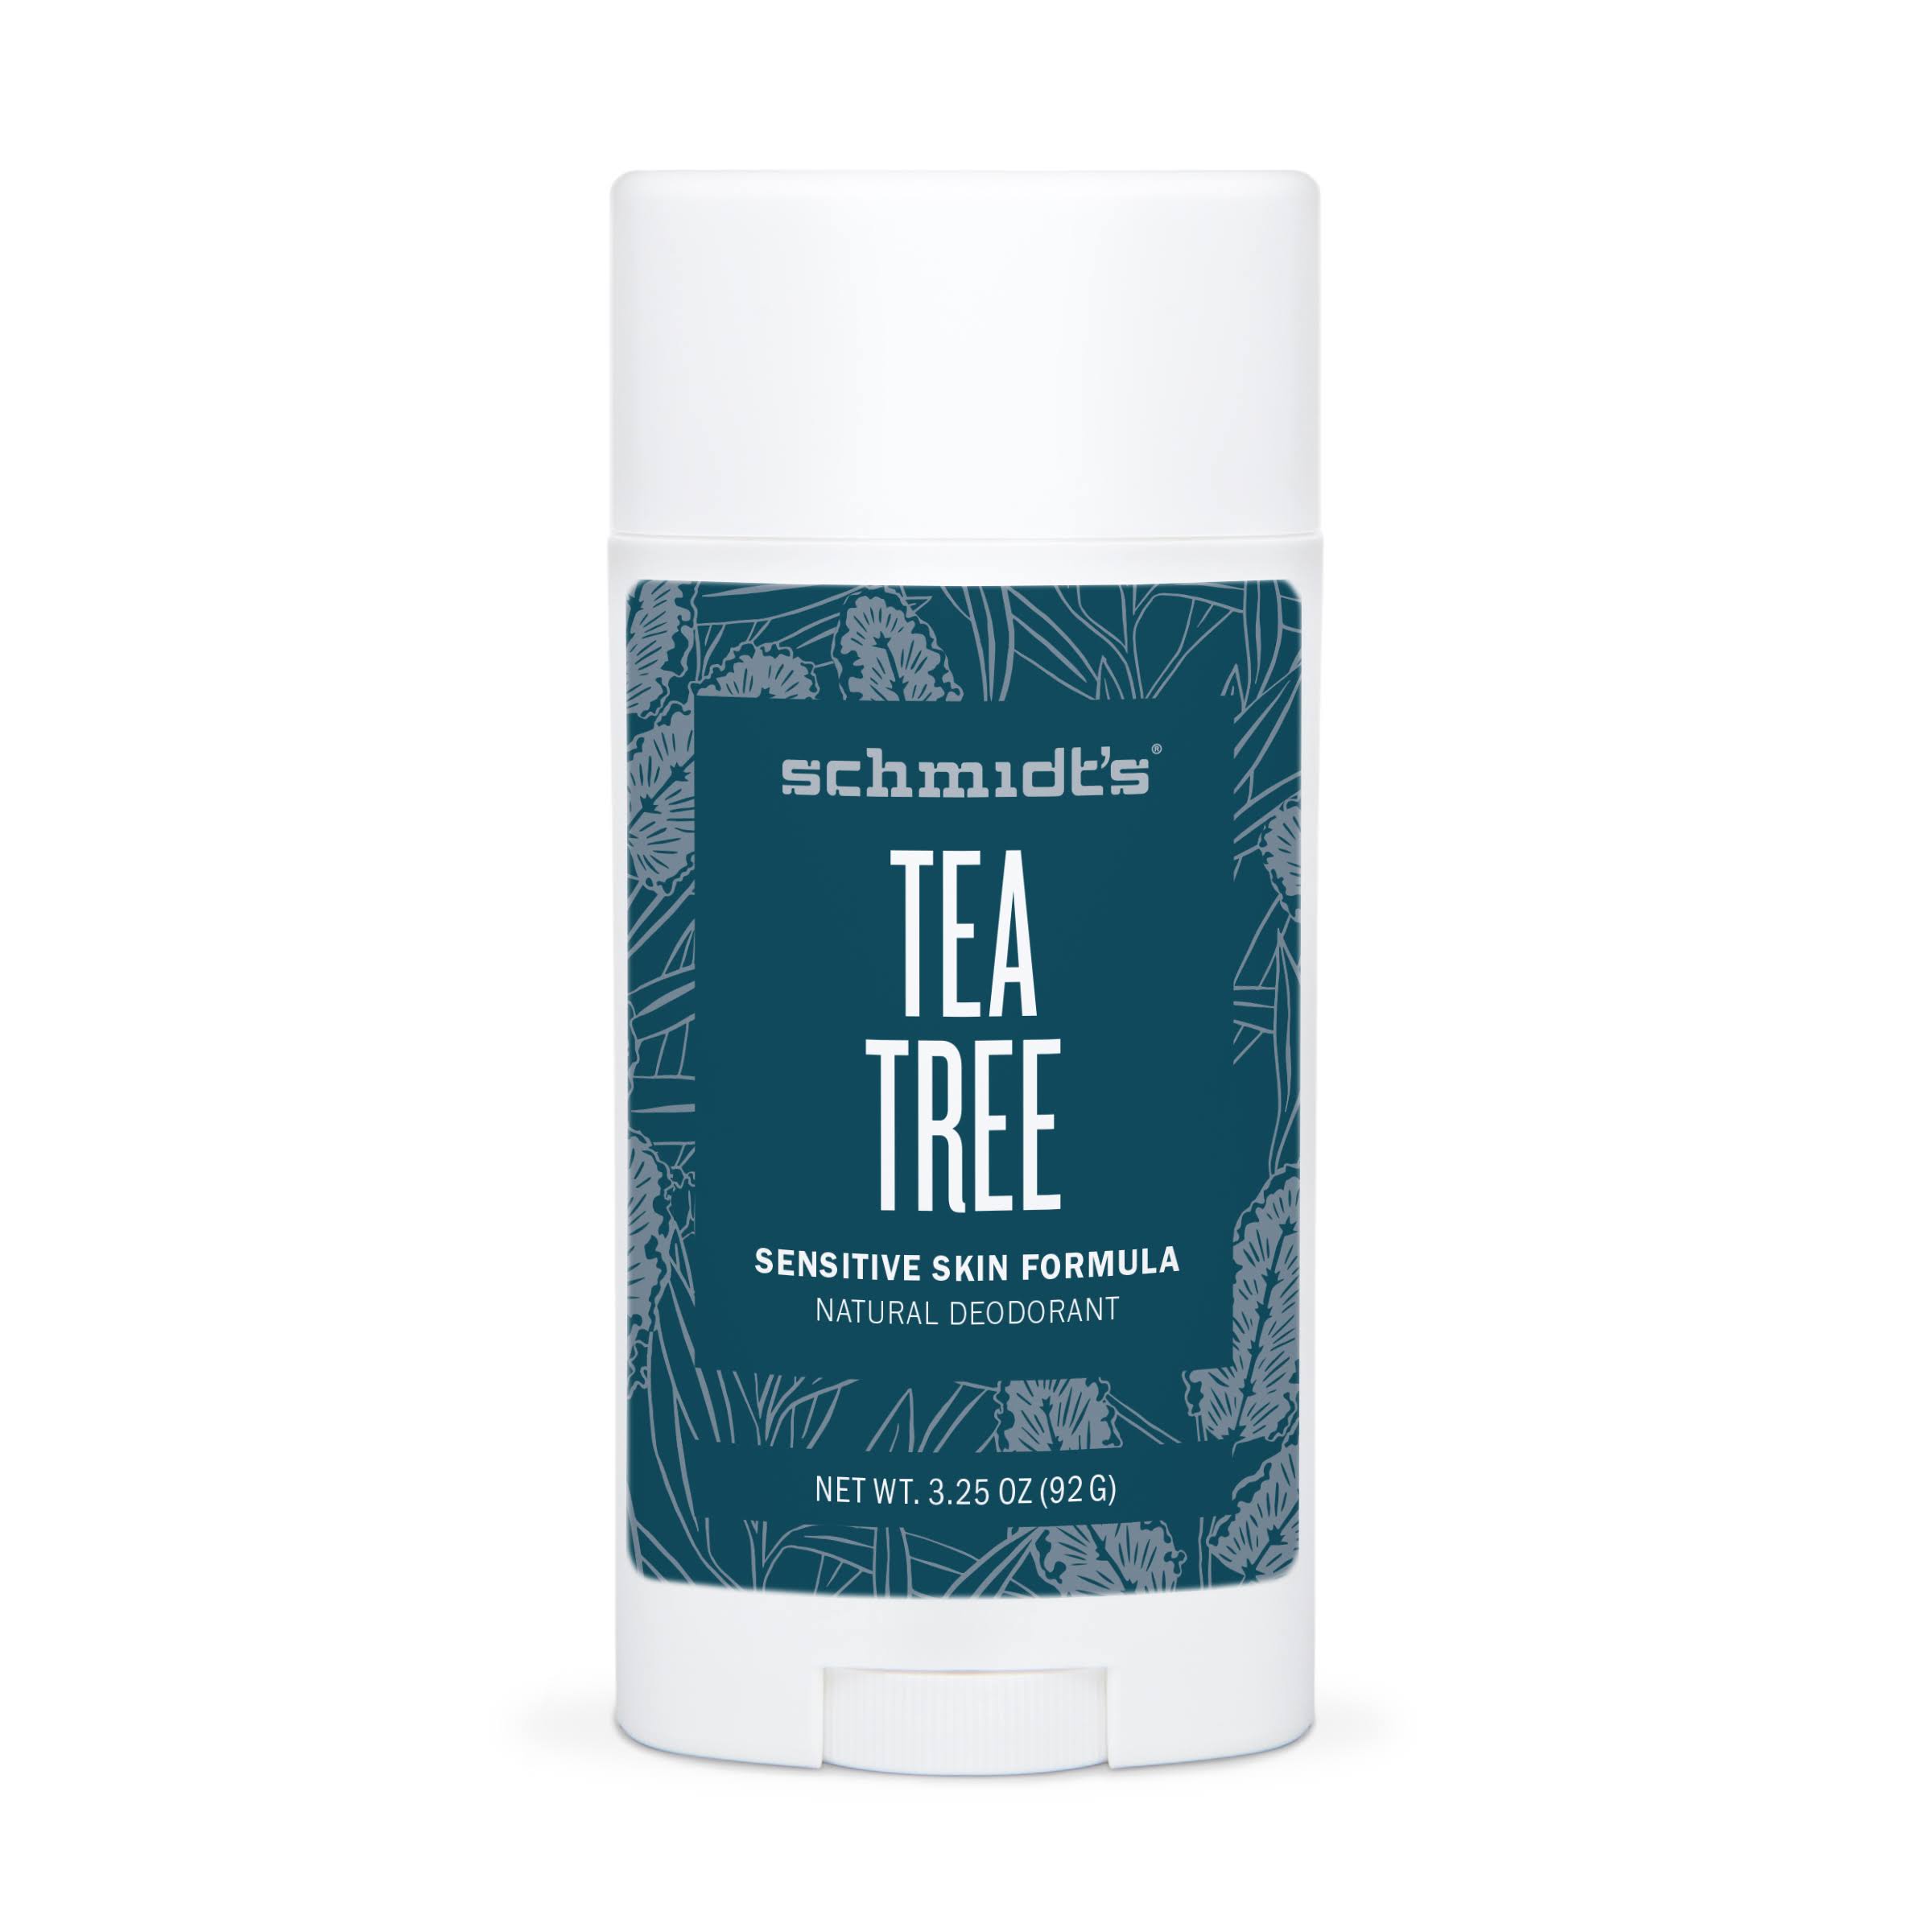 Schmidts Deodorant, Natural, Sensitive Skin Formula, Tea Tree - 3.25 oz